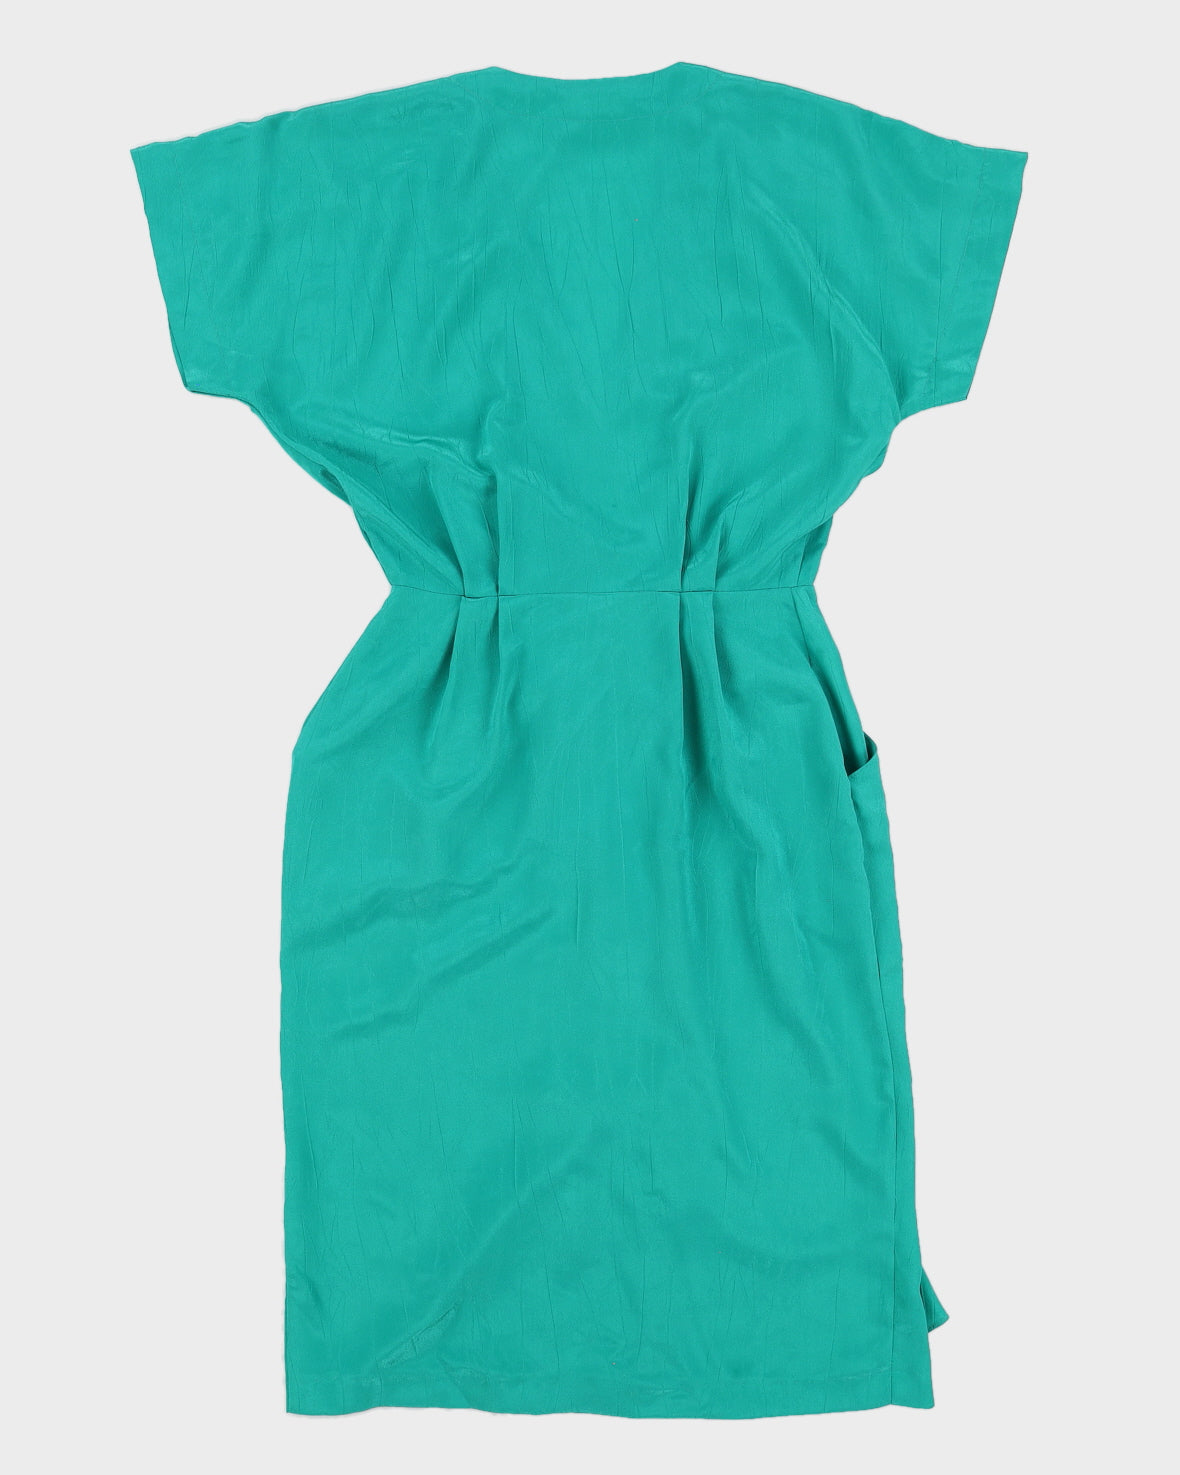 1980s Turquoise V Neck Dress - S